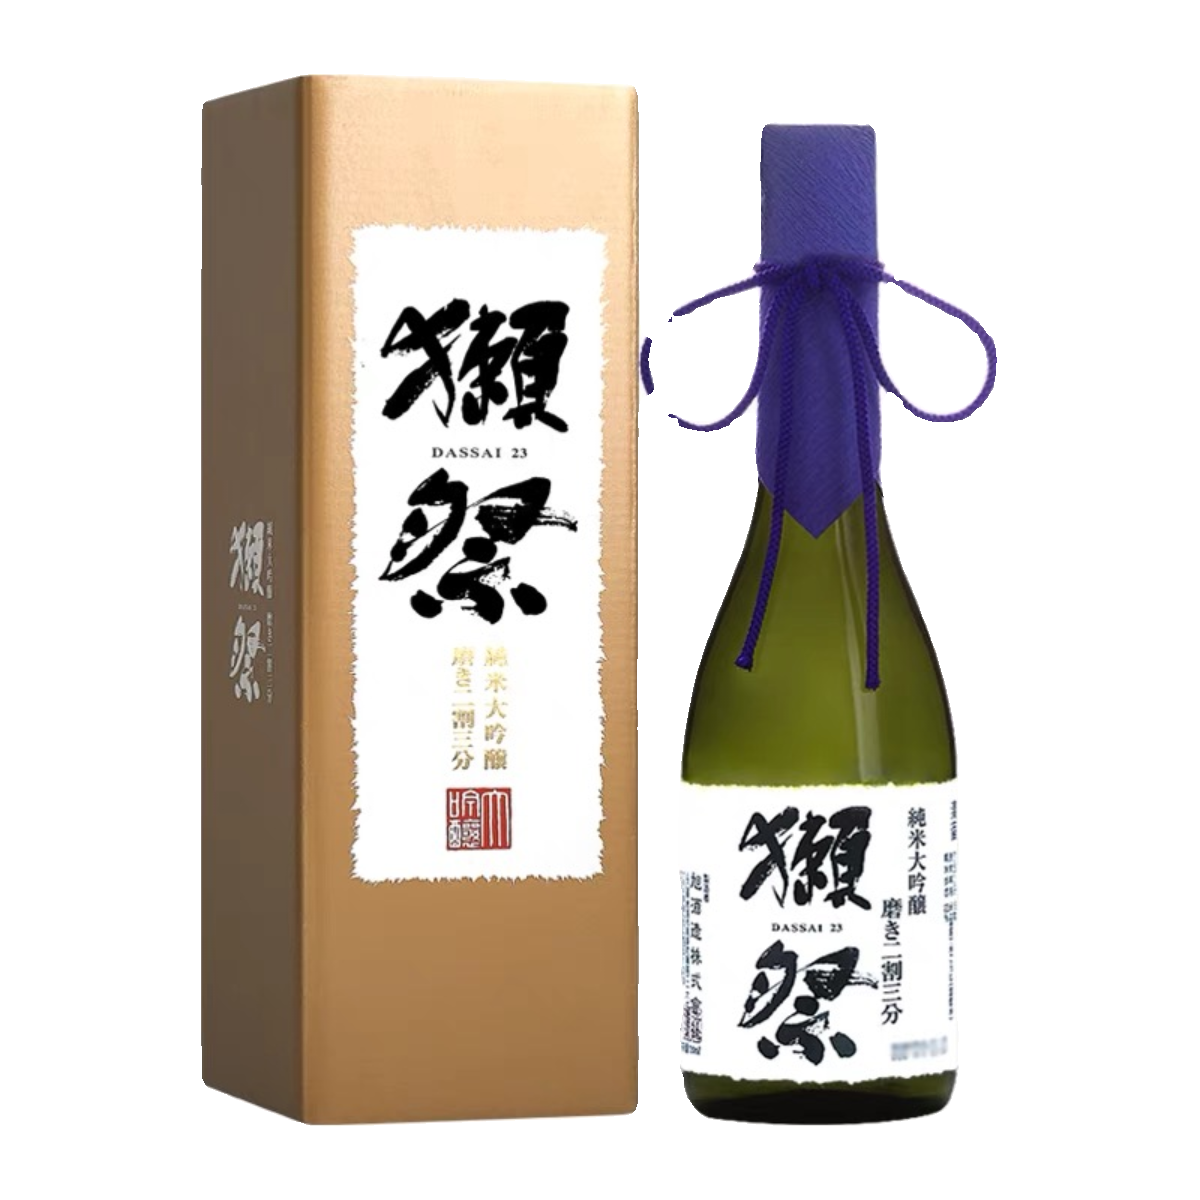 日本进口獭祭23二割三分三割九分清酒DASSAI纯米大吟酿寿司店濑祭 - 图2